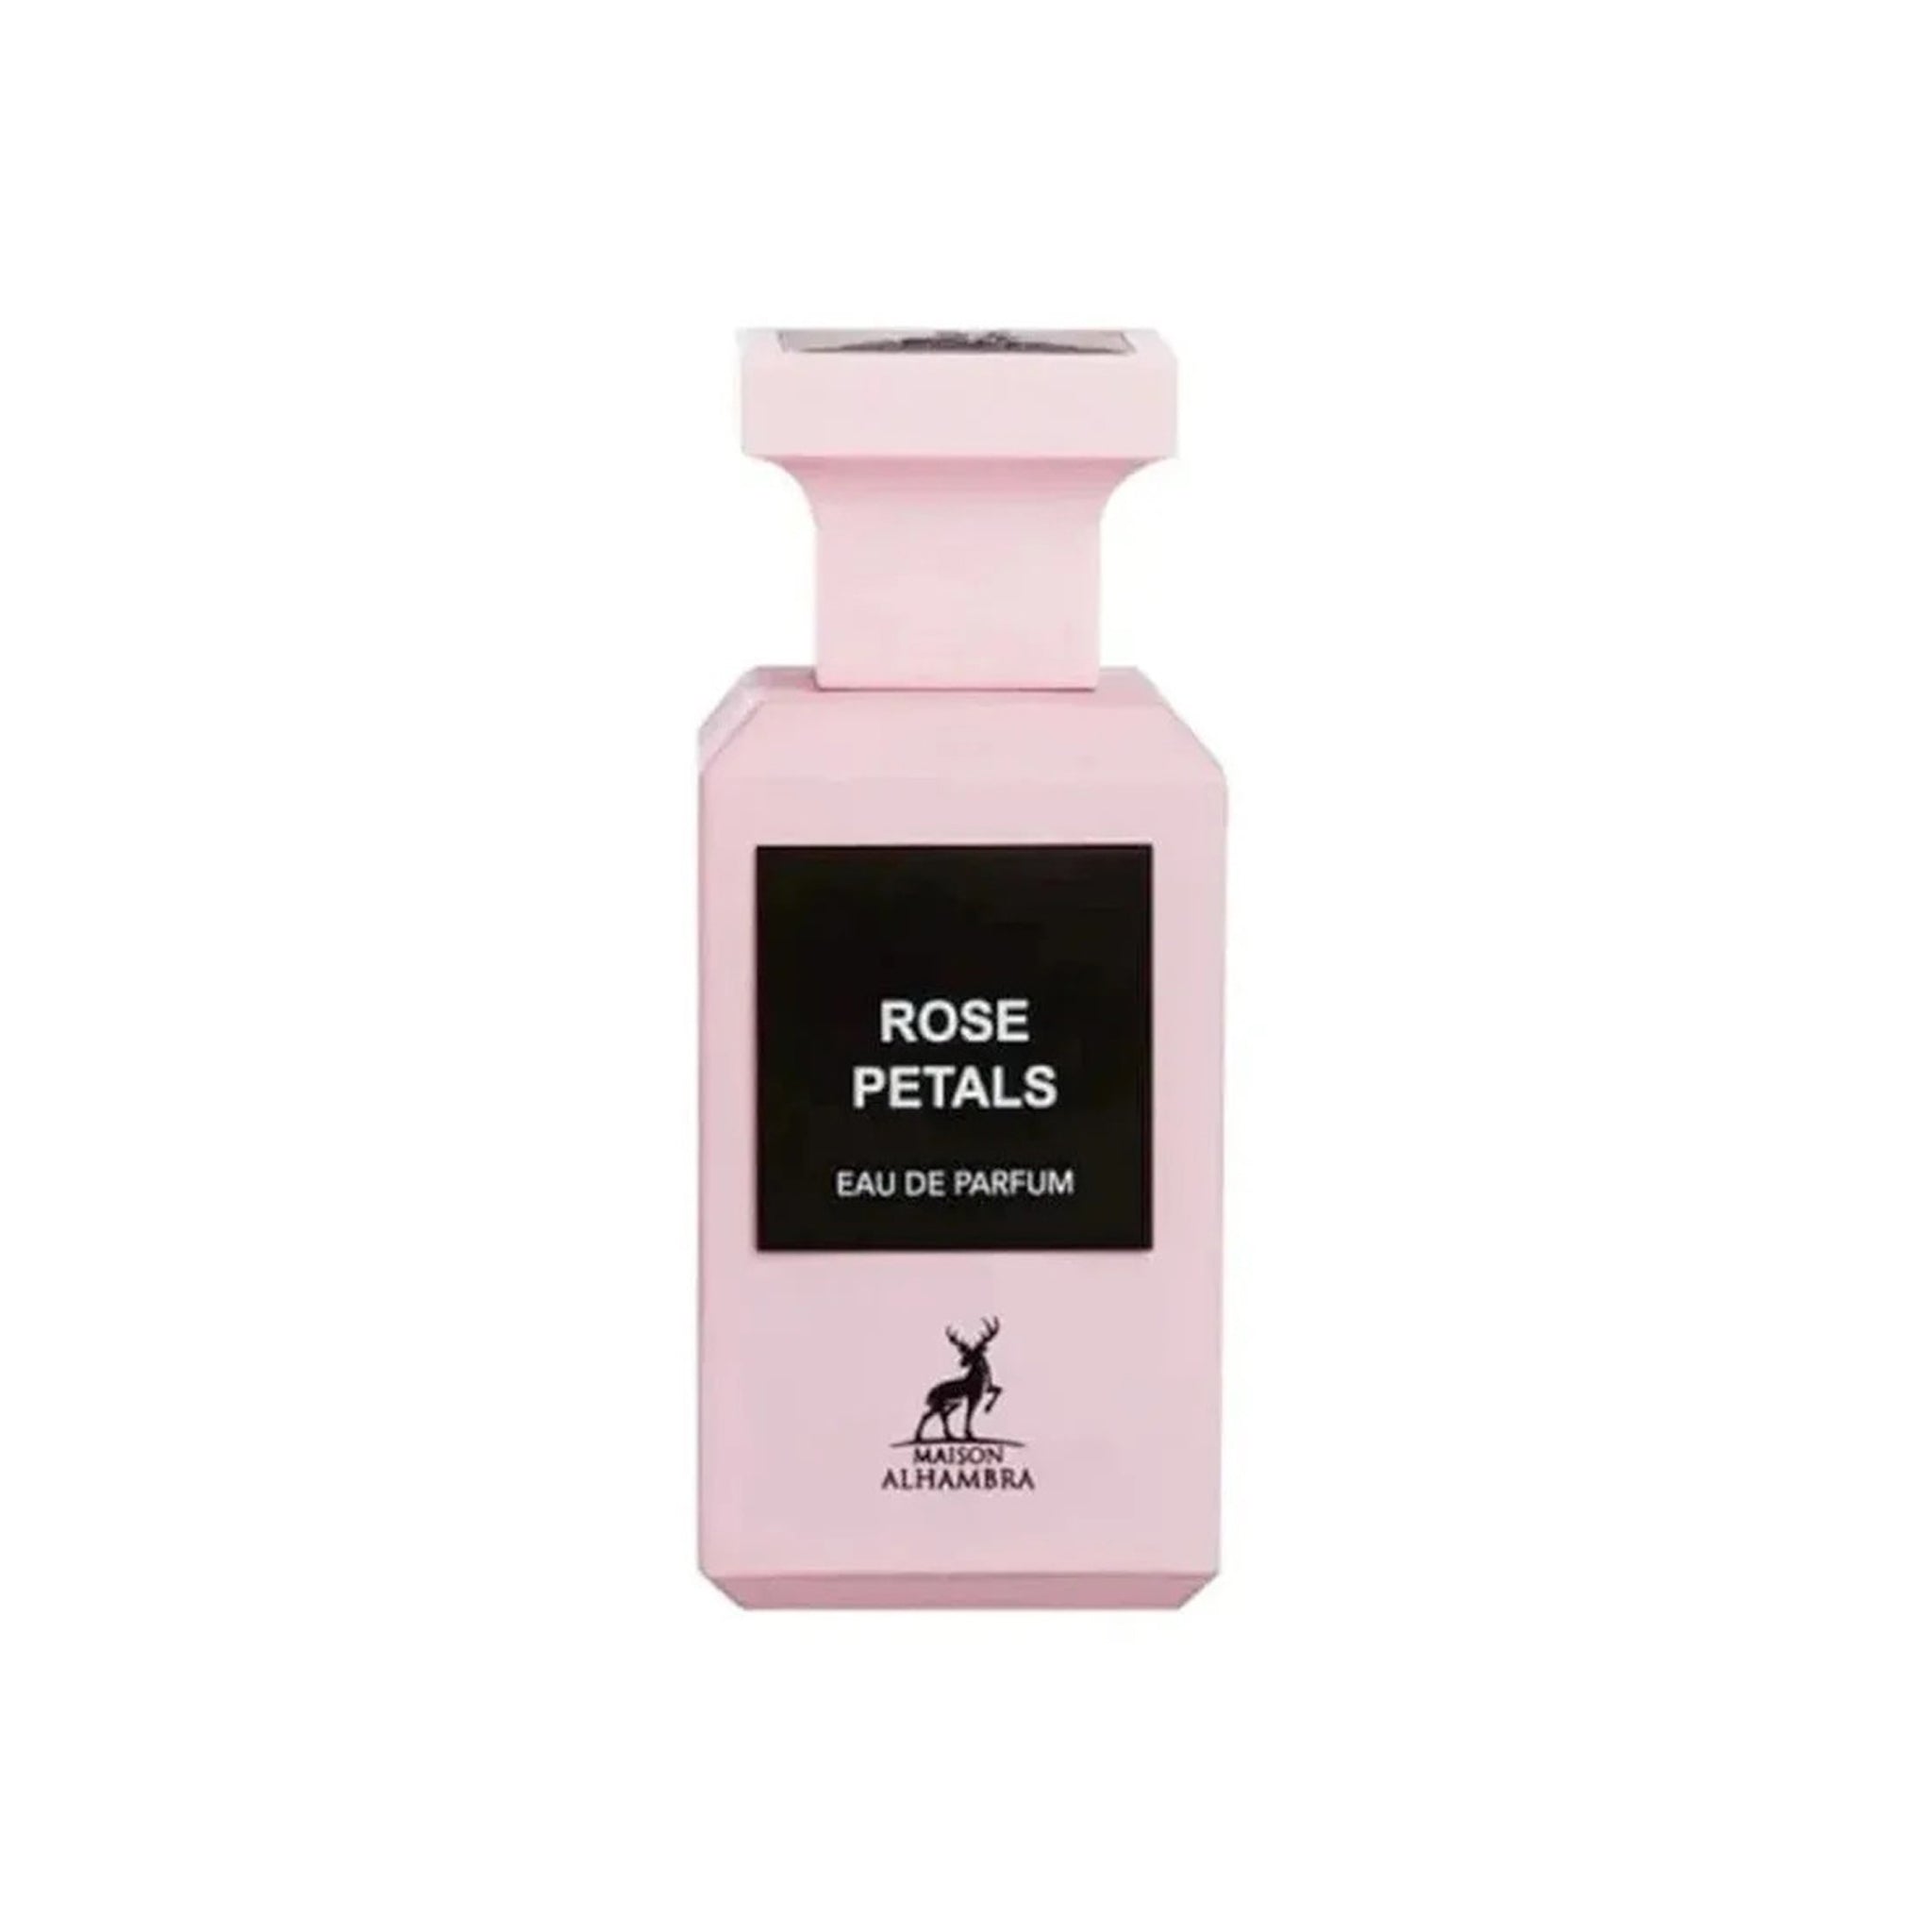 Rose Petals (Eau De Parfum 80ml) by Maison Alhambra